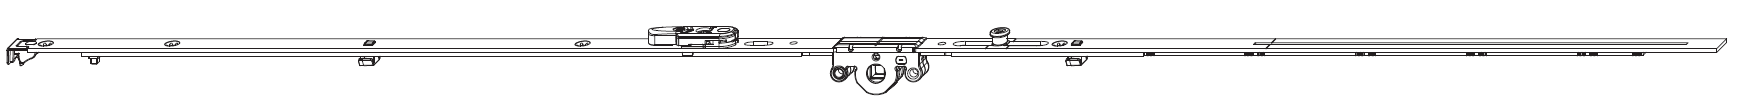 MAICO -  Cremonese MULTI-MATIC anta ribalta antieffrazione altezza maniglia fissa con piedino e dss per ribalta - gr / dim. 1950 - entrata 15 - lbb/hbb 1701-1950